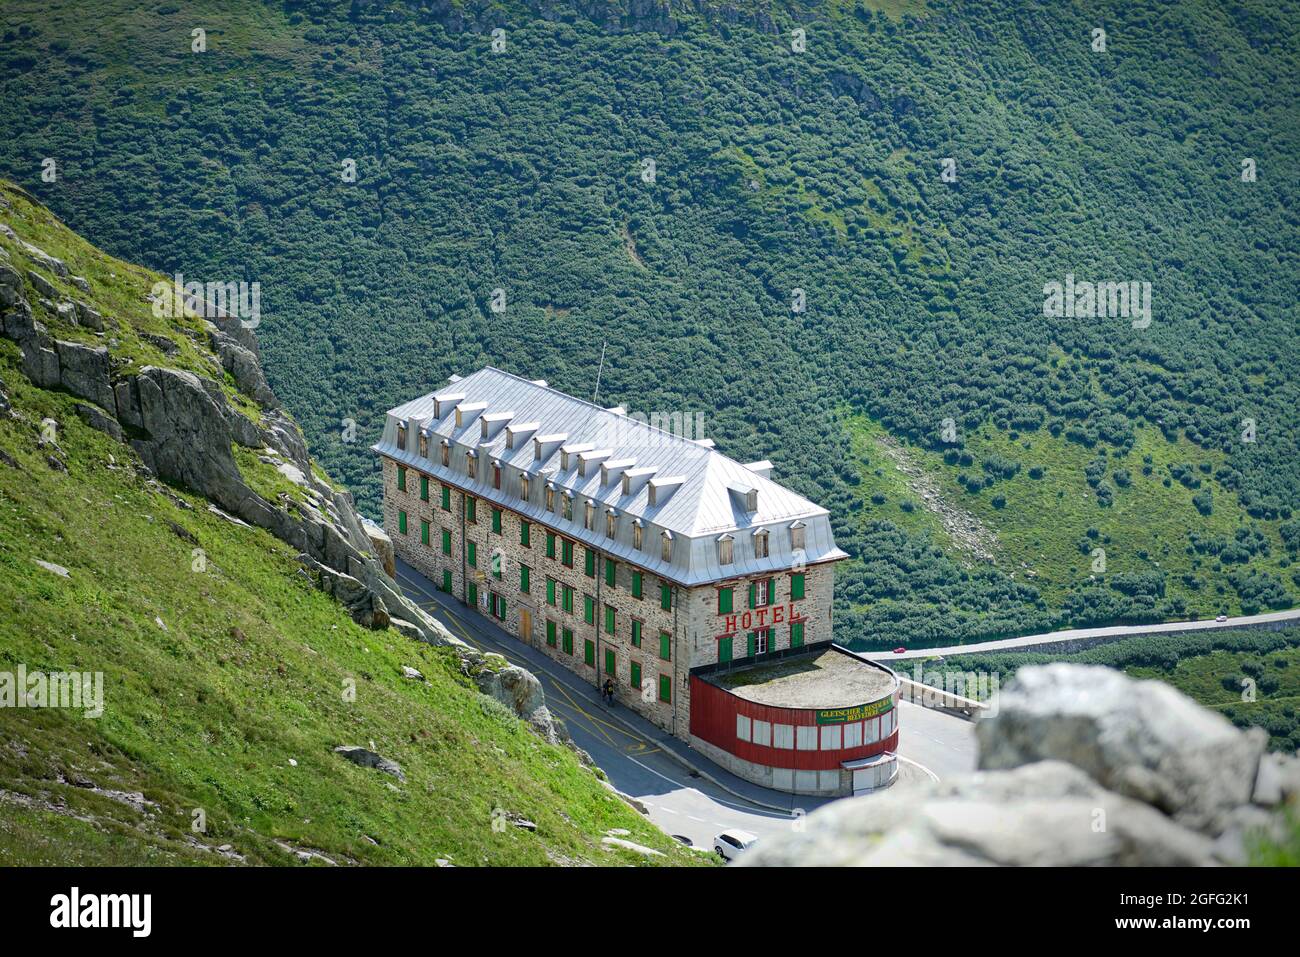 Hotel Belvedere al Passo Furka 2436 m. Furkapass è stato presentato nel film Goldfinger di James Bond. Furka pass, Svizzera - Agosto 2021 Foto Stock